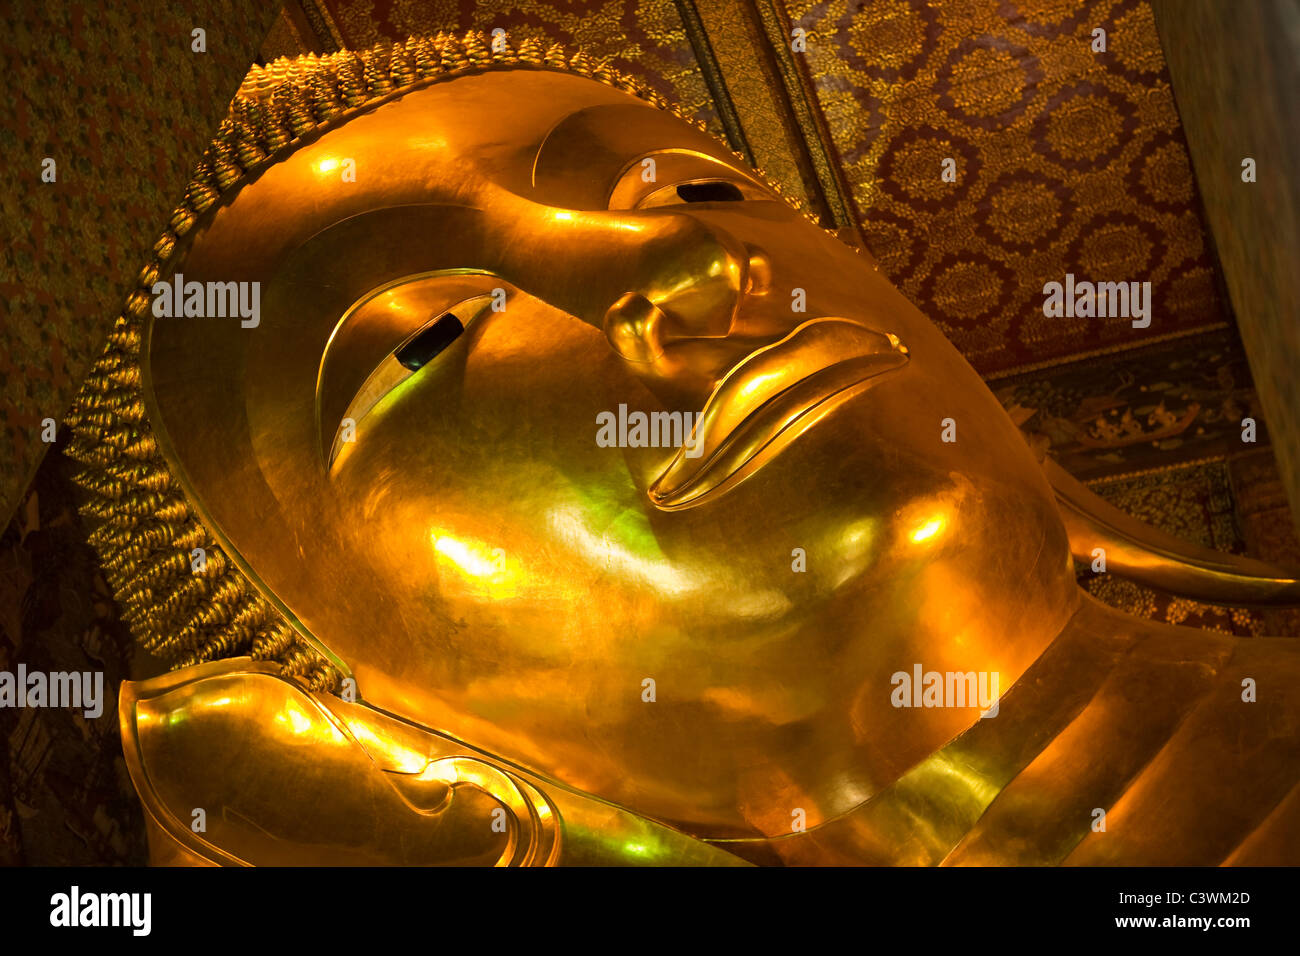 Le Bouddha couché du Wat Pho temple, Bangkok, Thaïlande Banque D'Images